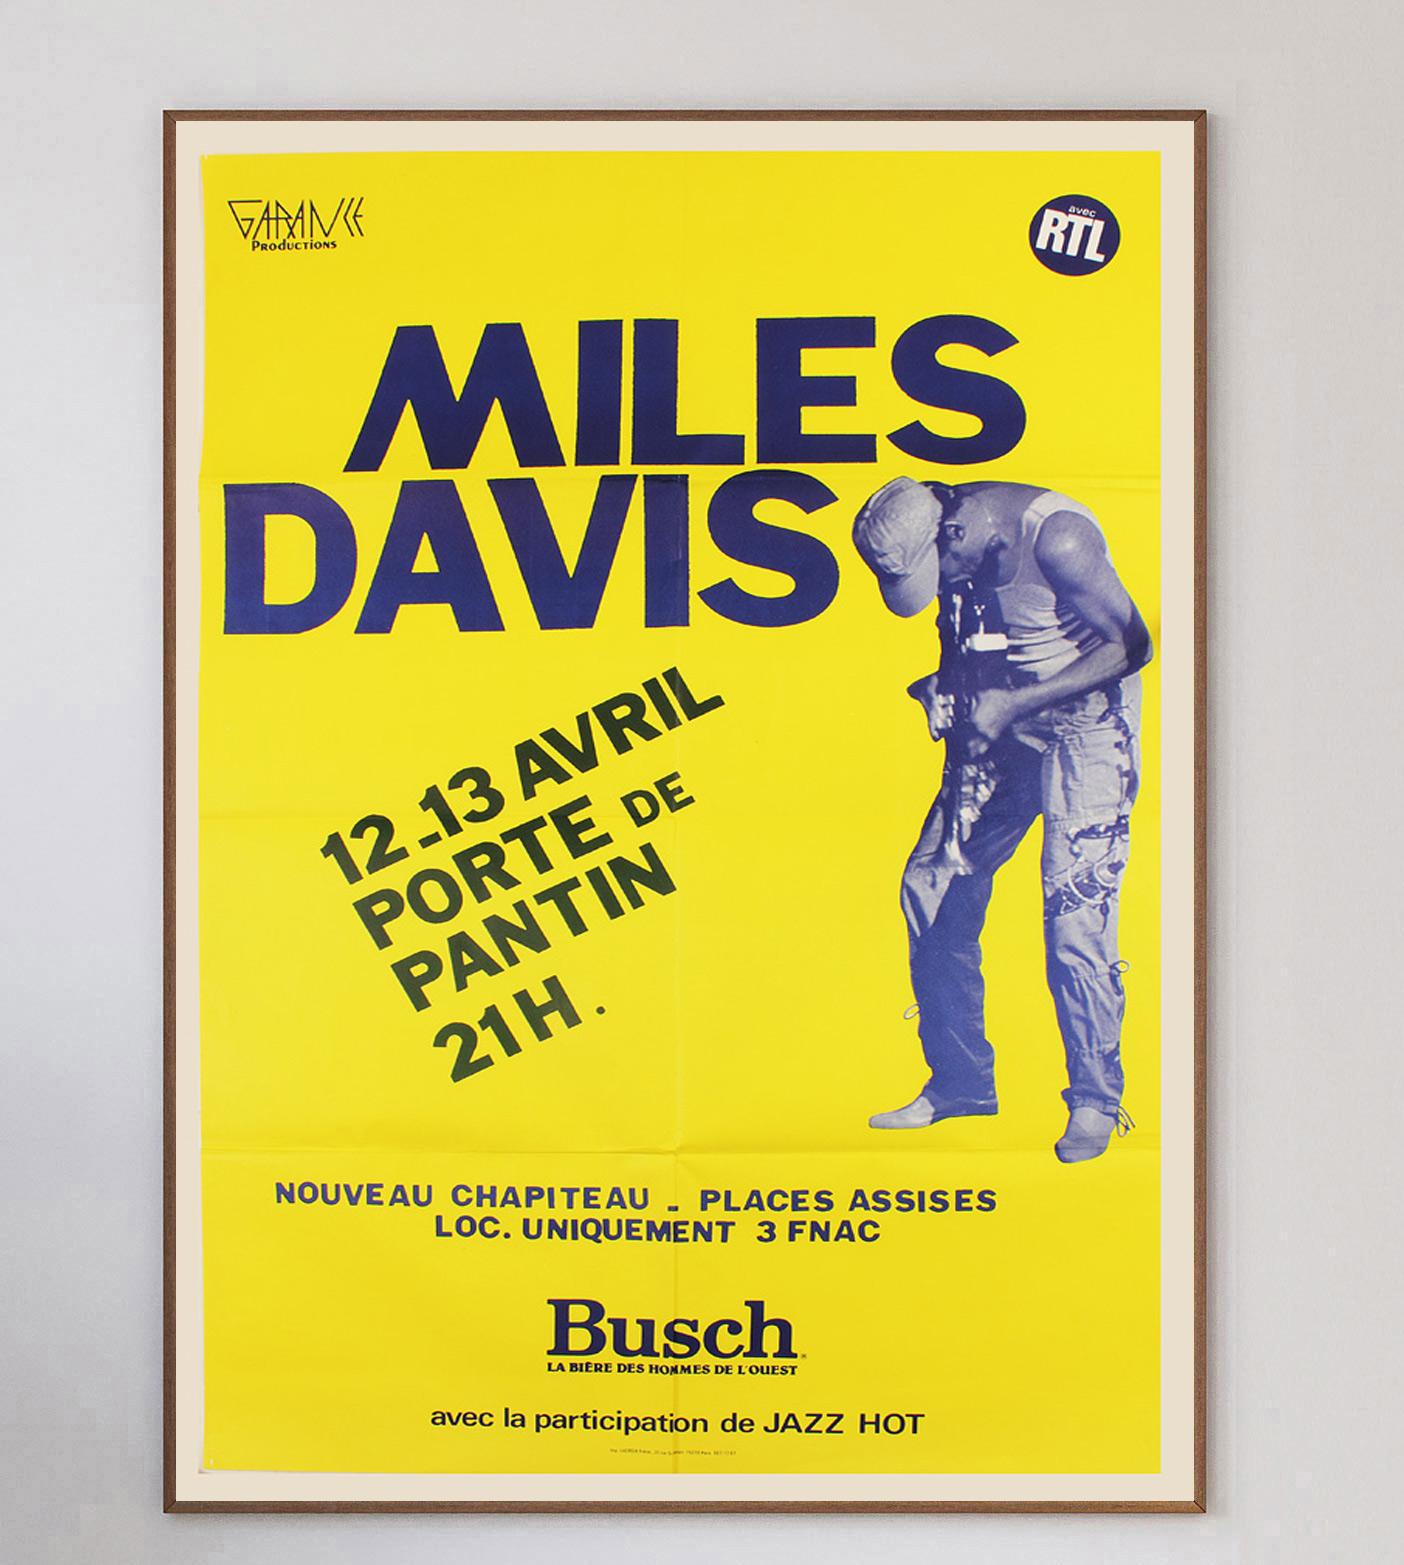 Belle et vibrante affiche annonçant le concert du grand jazzman Miles Davis à Paris, Porte de Pantin, en avril 1983. Avec des albums emblématiques tels que Kind of Blue, Miles Davis est considéré comme l'un des plus grands artistes du XXe siècle, et